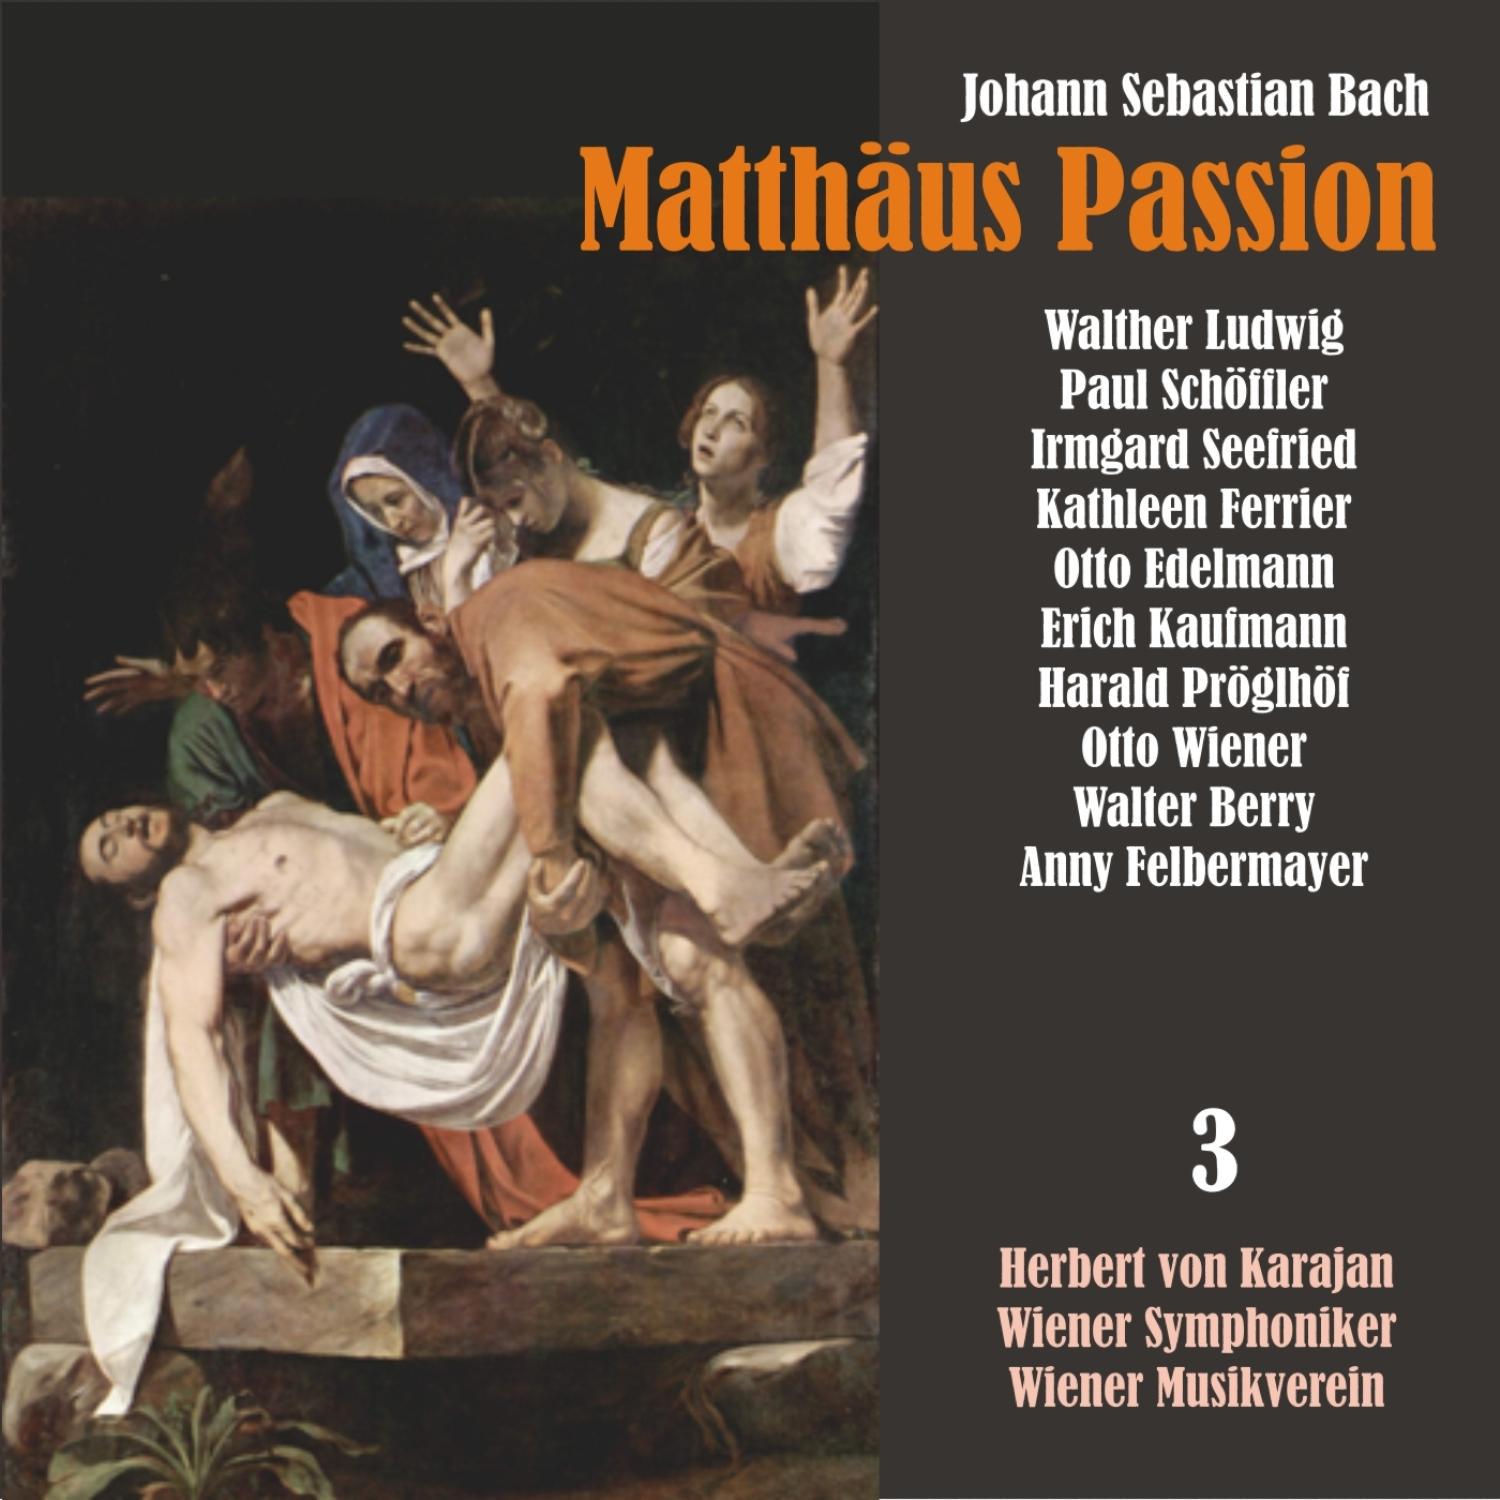 Matthäus Passion, BWV 244: "Wir setzen uns mit Tranen nieder"